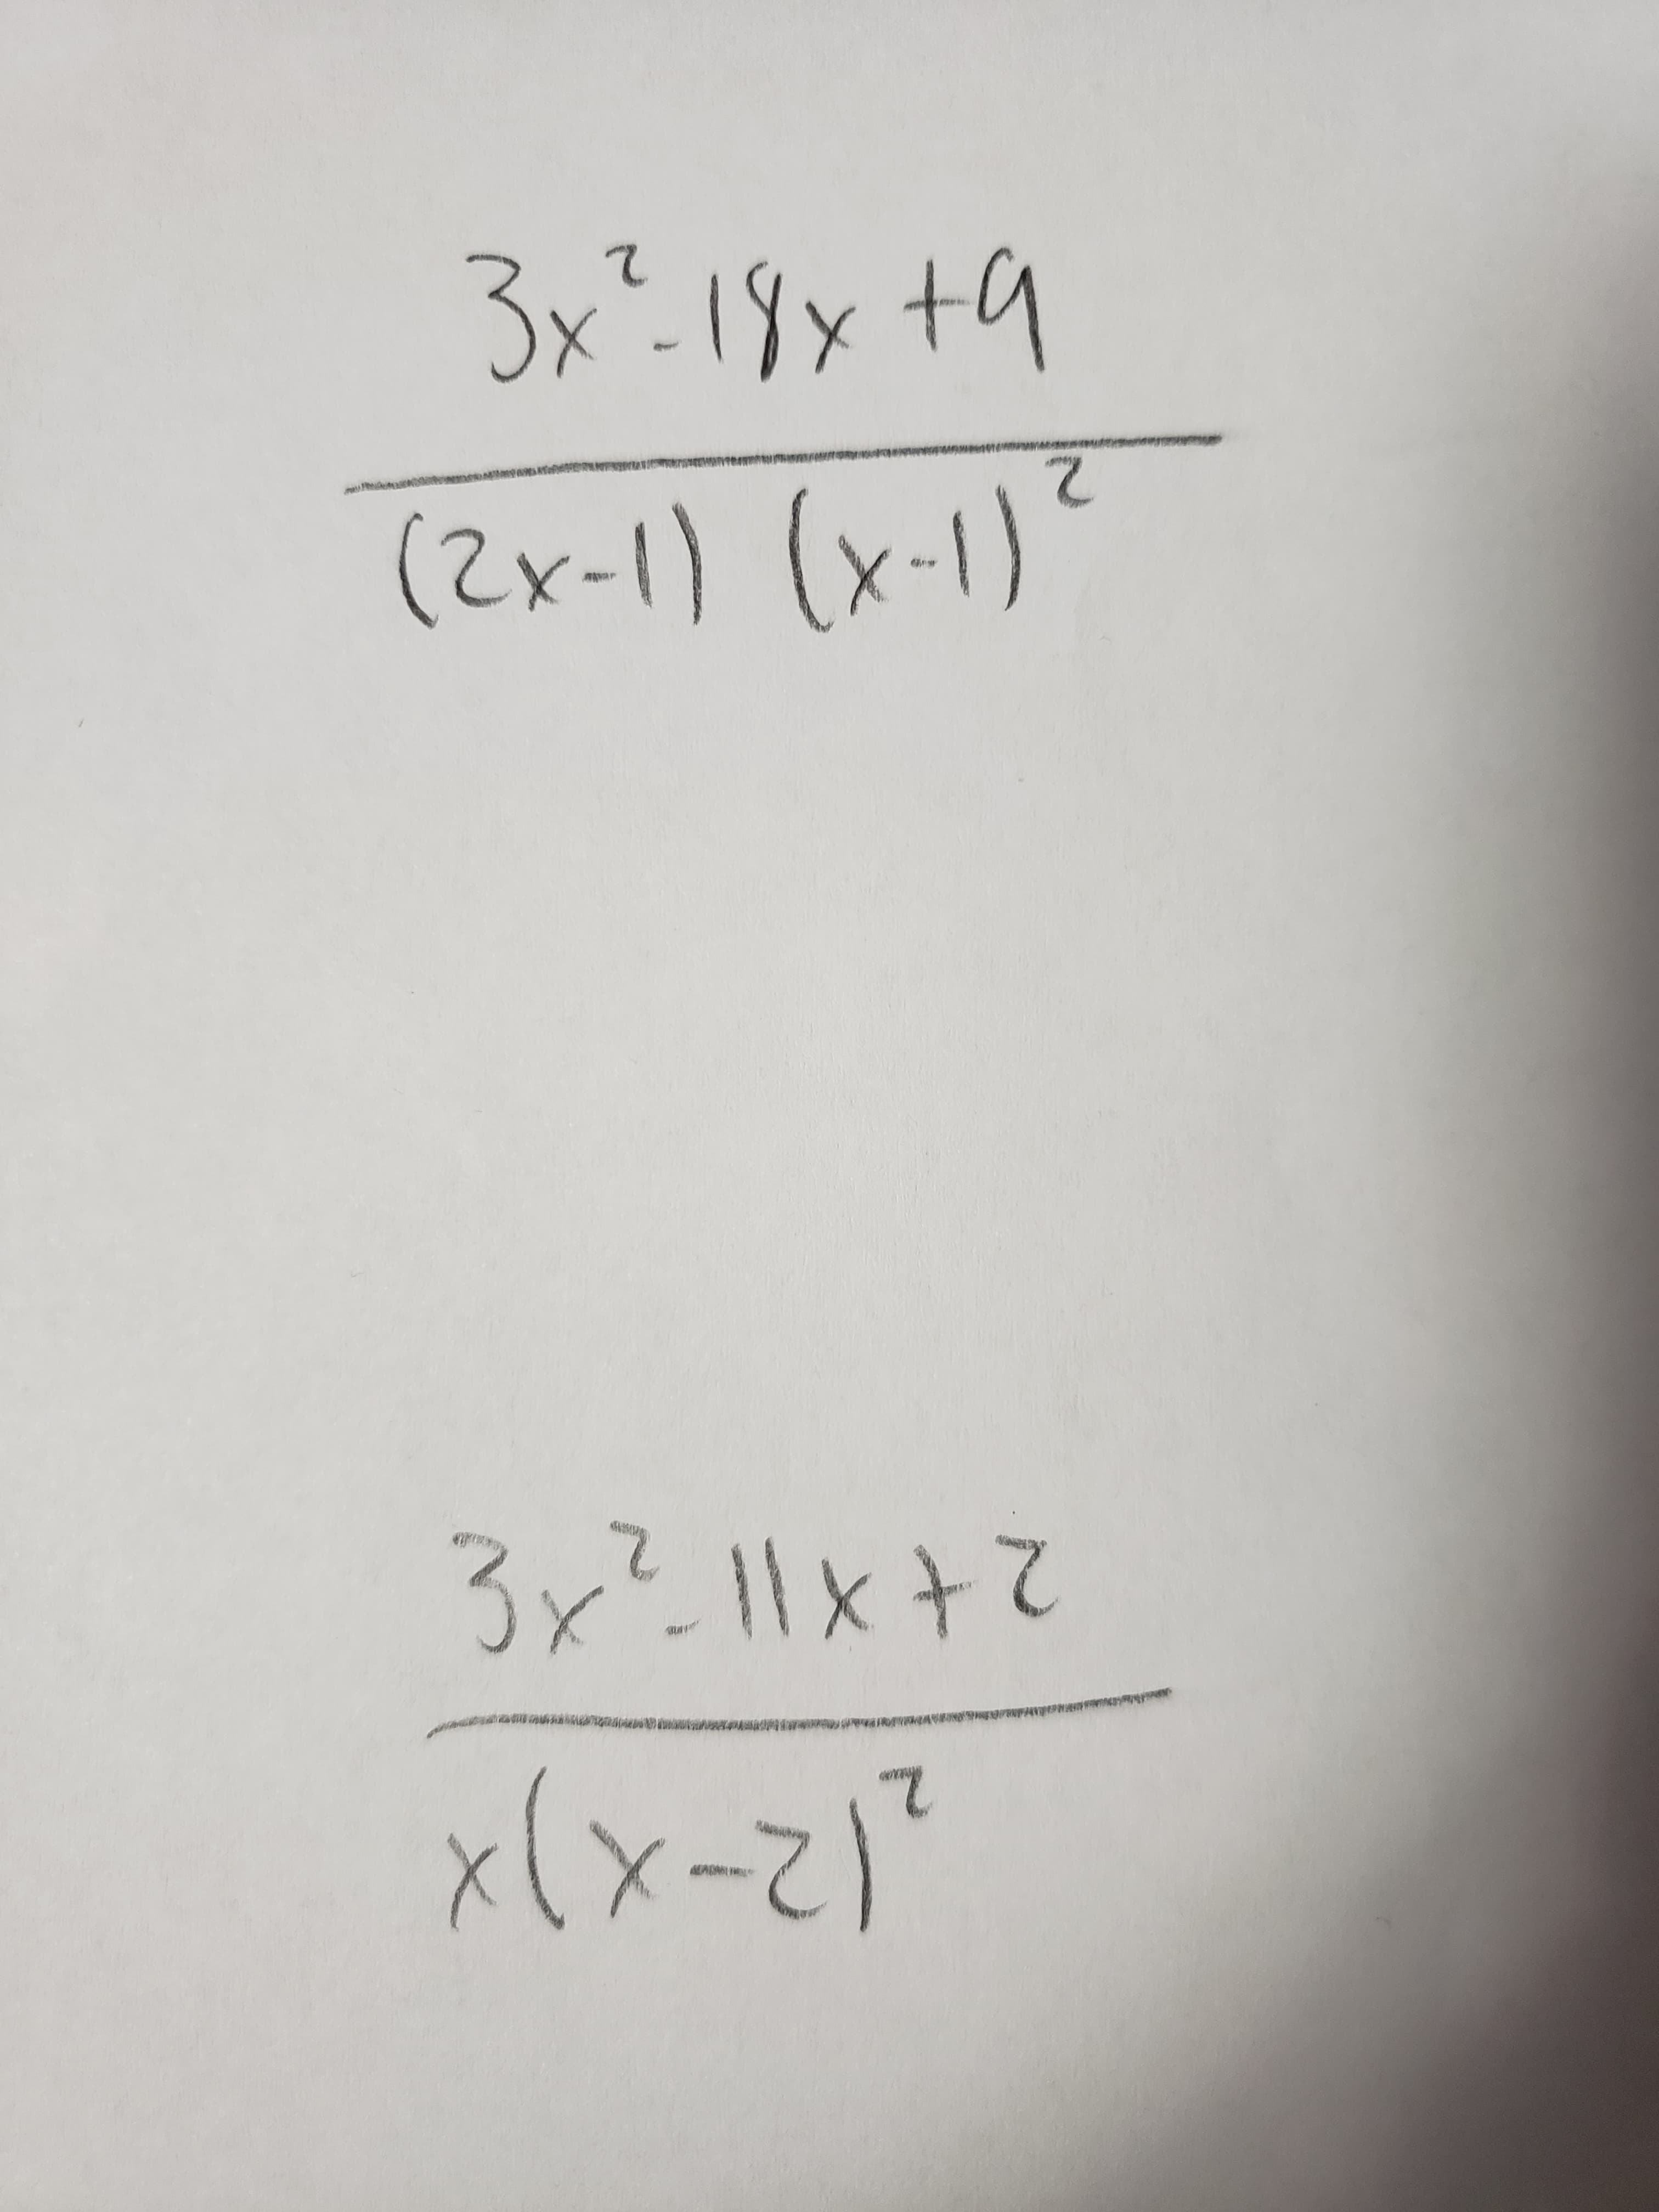 3x-19 t
(2x-1) (x-1)
3x2-11xt7
EPDL
12-x)X
